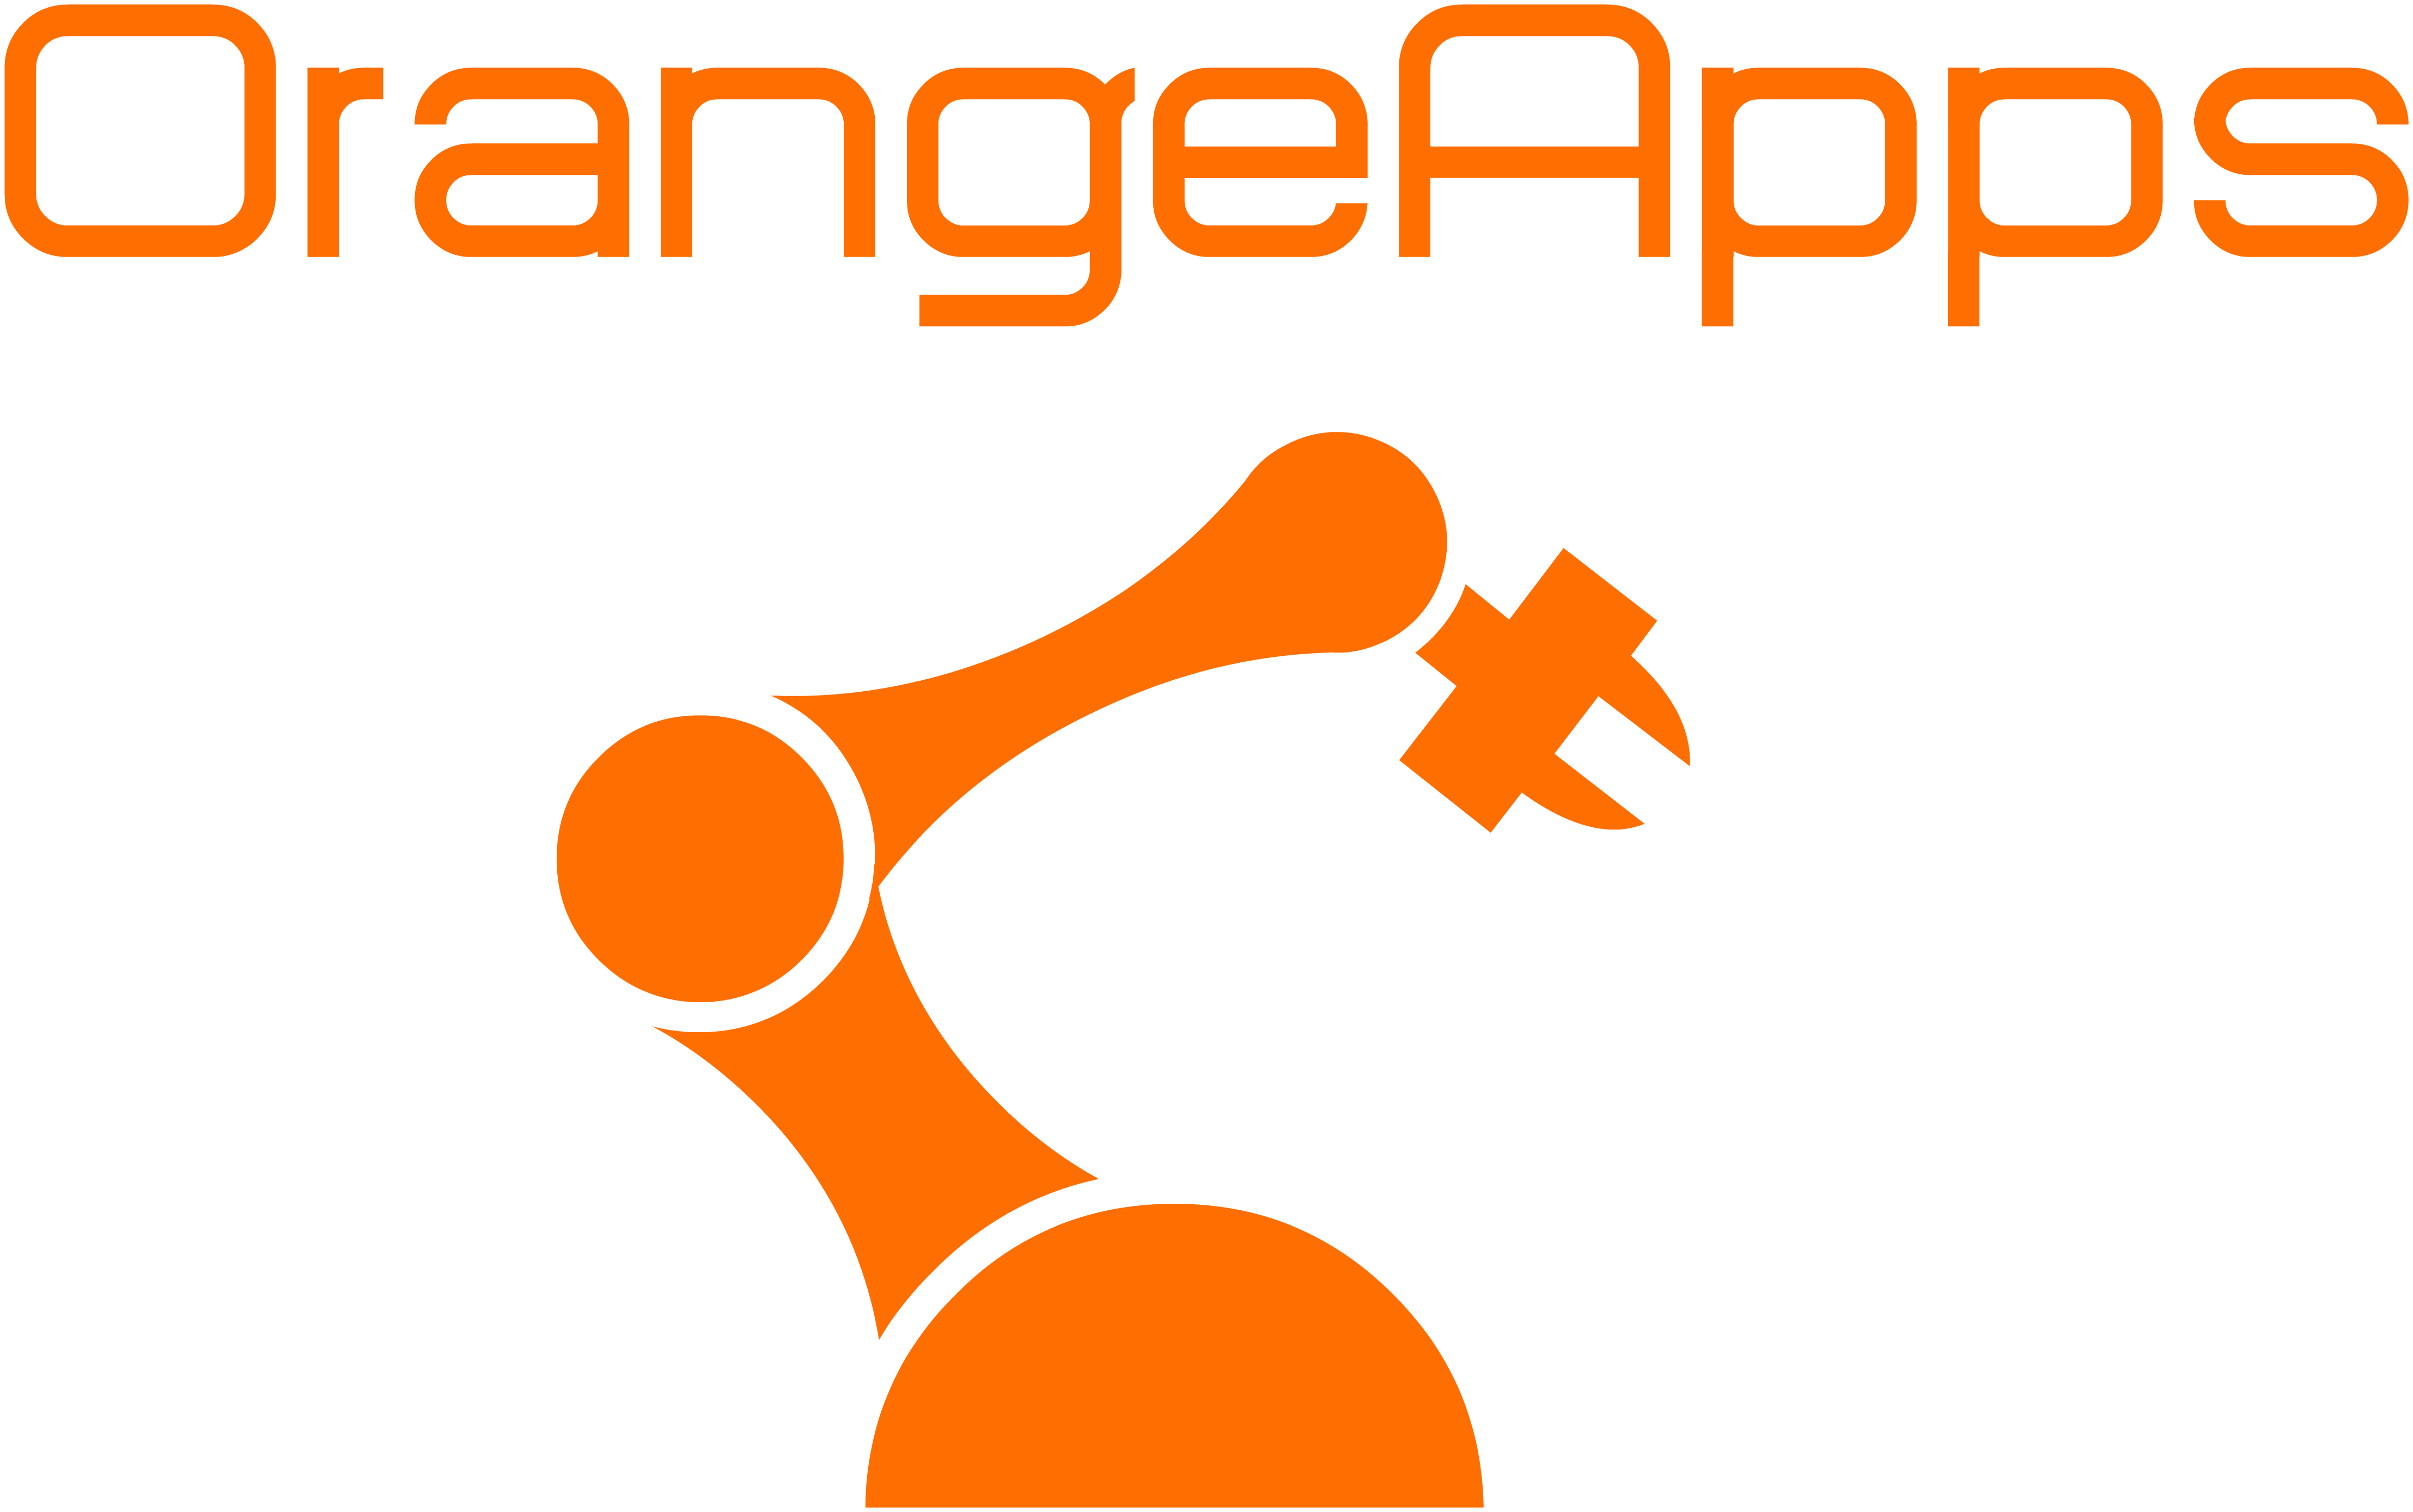 OrangeAppsSchriftzug_mit_Logo.png